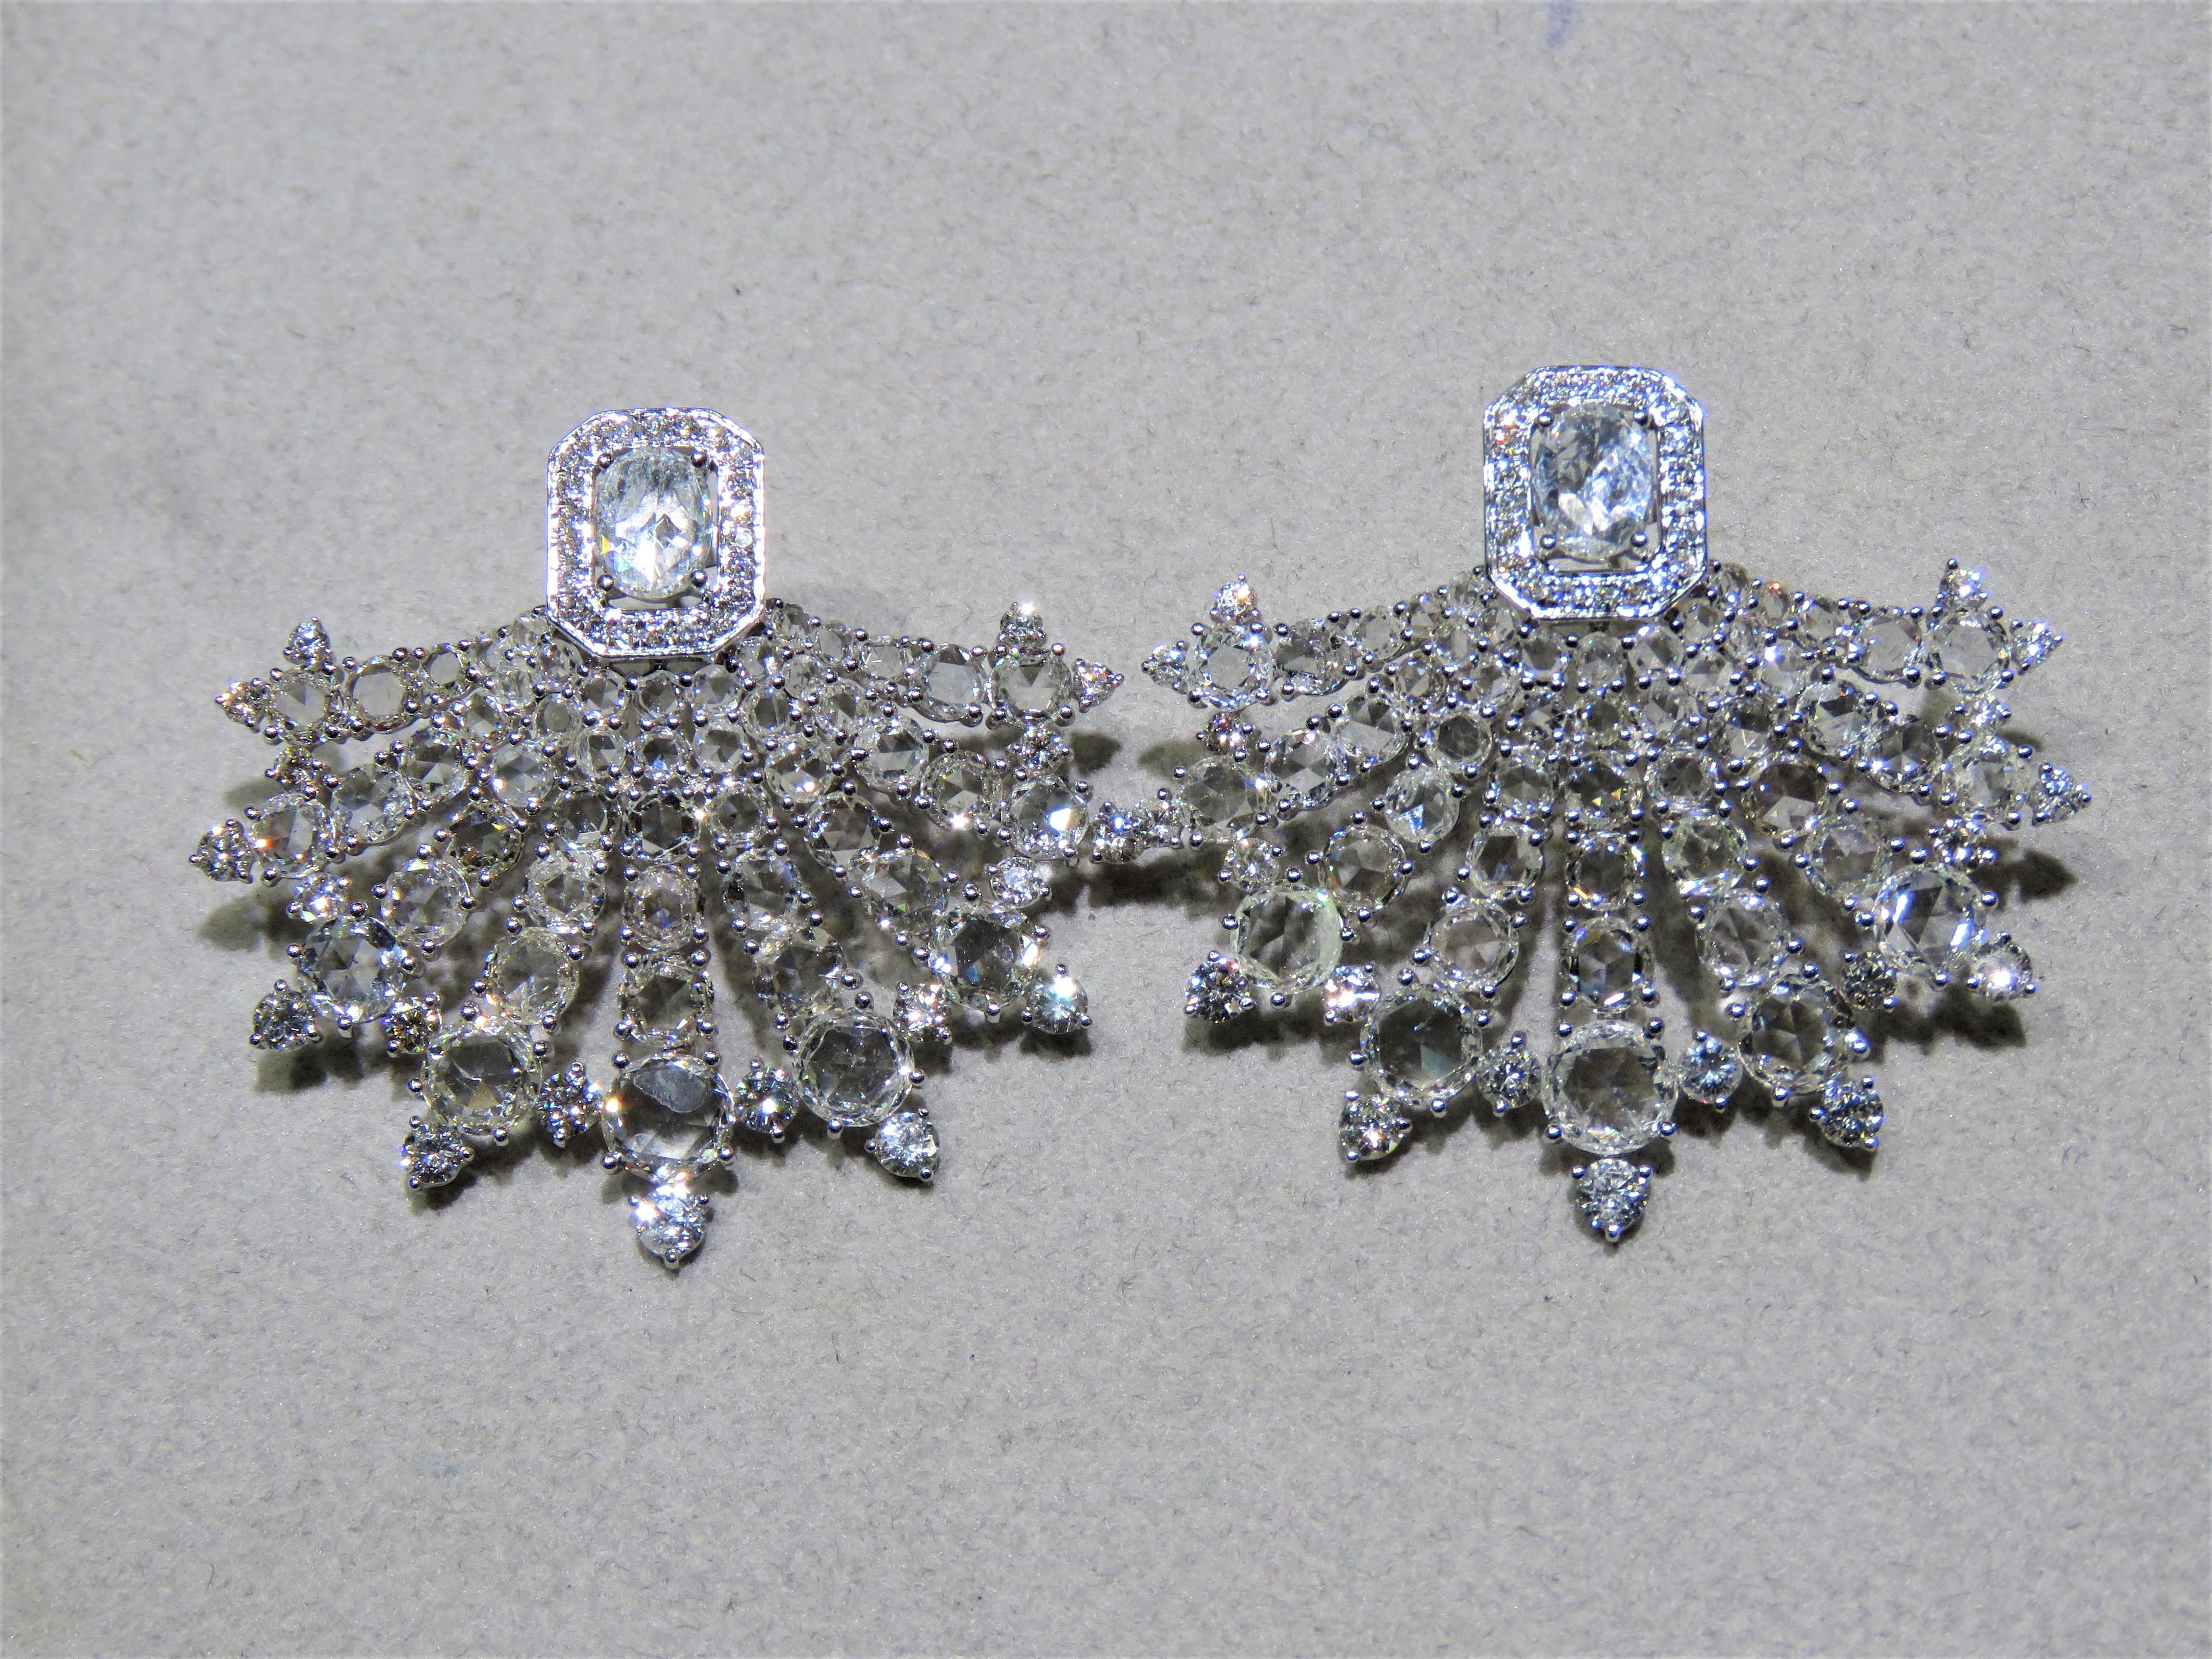 Der folgende Artikel, den wir anbieten, sind diese extrem seltenen schönen 18KT Gold feinen großen Fancy Rose Cut White Diamond Earrings. Jeder Ohrring verfügt über seltene, glitzernde, große Diamanten im Rosenschliff, die mit funkelnden weißen